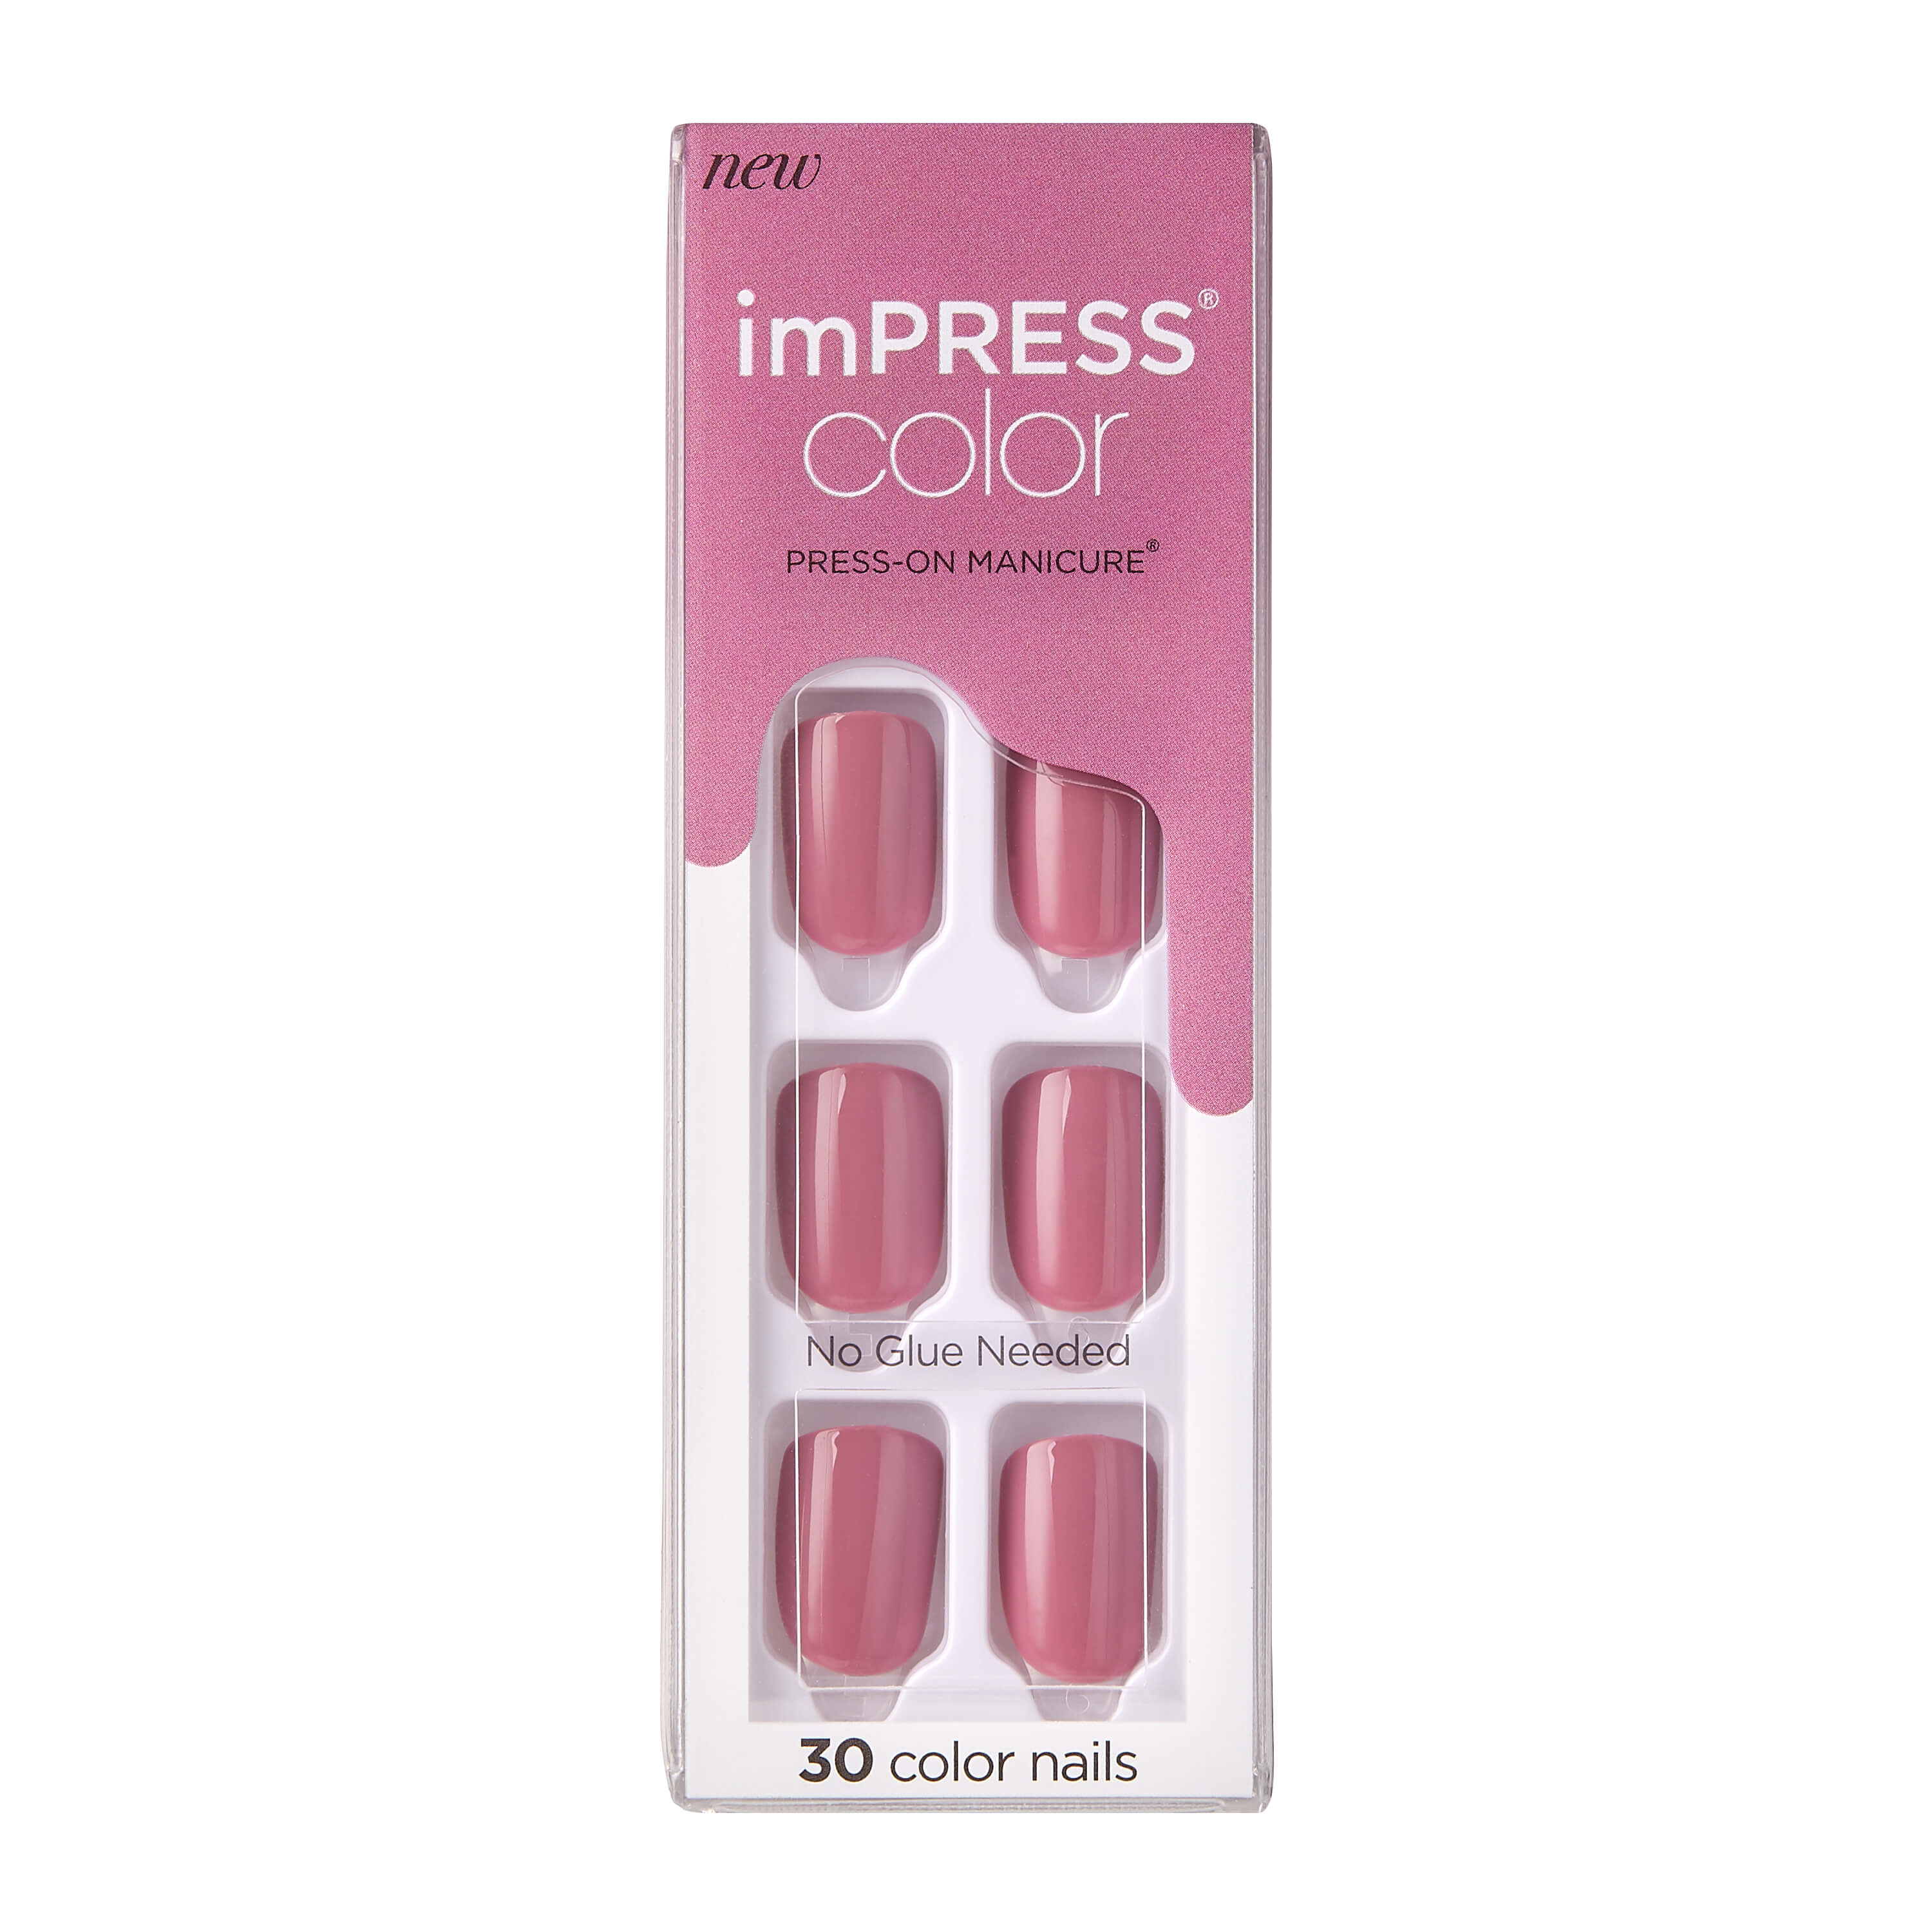 KISS imPRESS Color Press-on Manicure, Petal Pink, Short - image 1 of 9